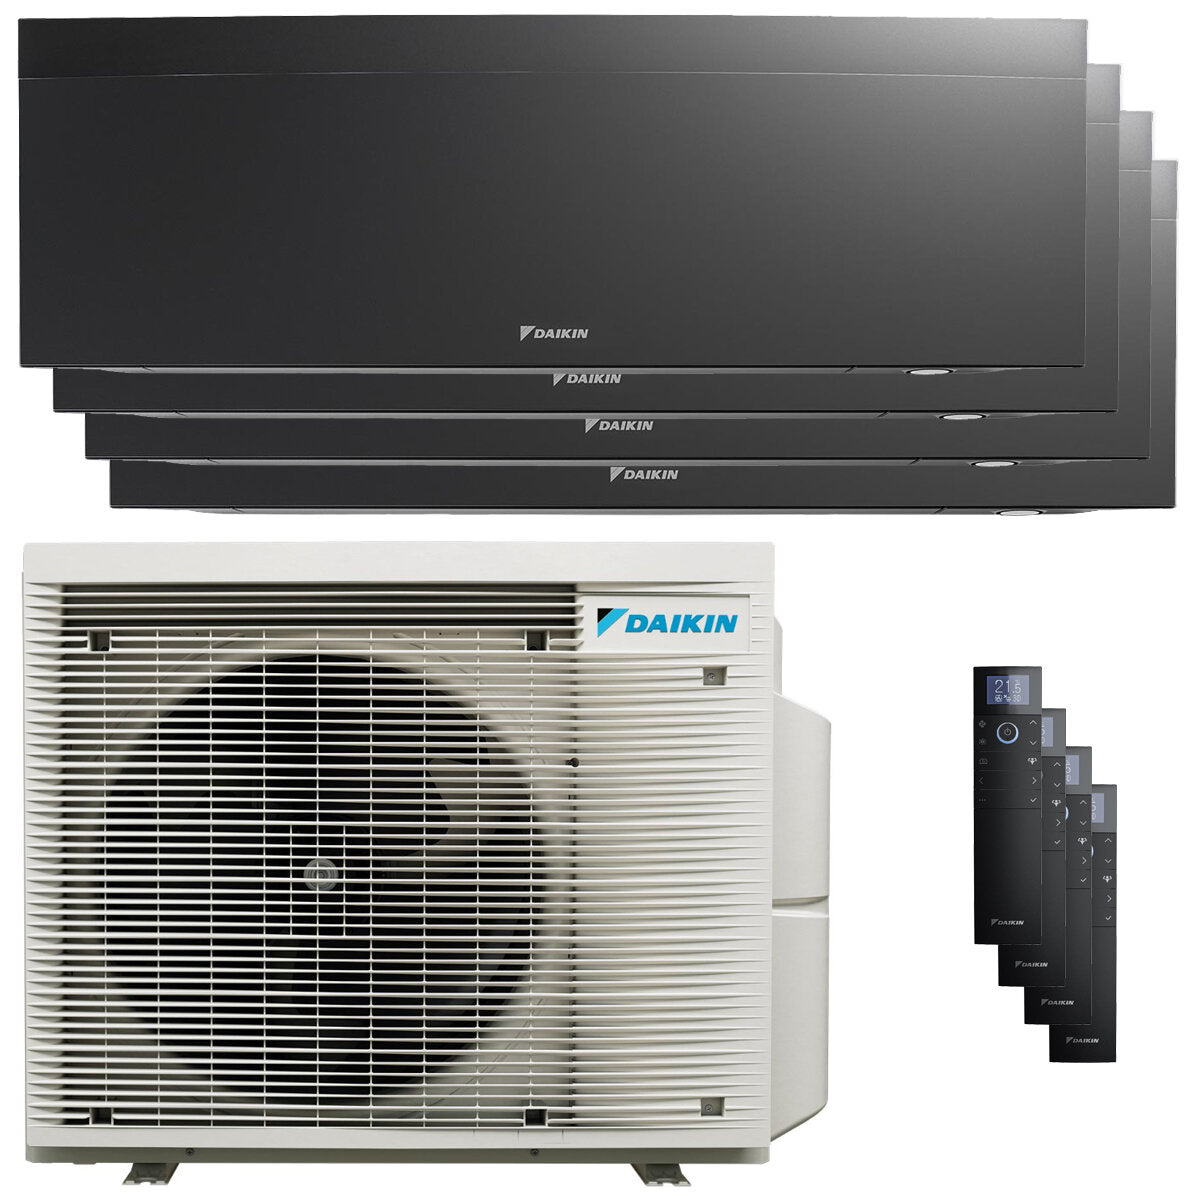 Daikin Emura air conditioner 3 split panels 12000+12000+12000+12000 BTU inverter A++ wifi outdoor unit 7.4 kW Black